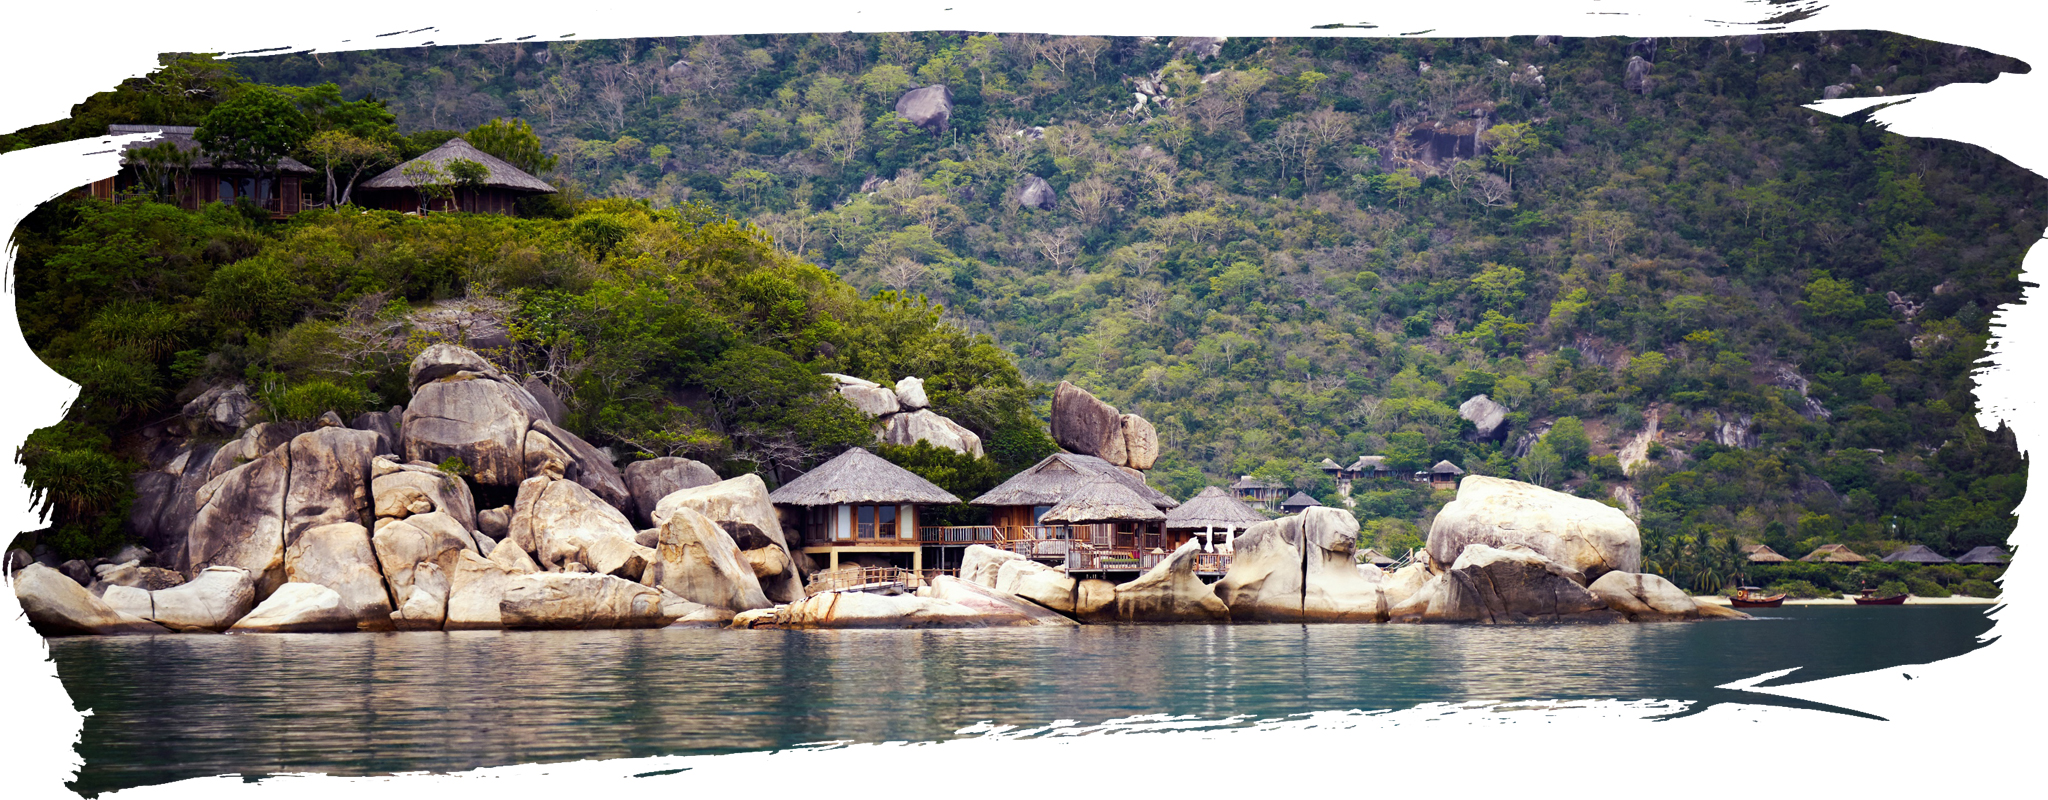 Khu nghỉ dưỡng Six Senses Ninh Van Bay nằm trên một trong những bán đảo đẹp nhất vịnh Nha Trang với những thành đá đồ sộ. (Nguồn ảnh: Six Senses)